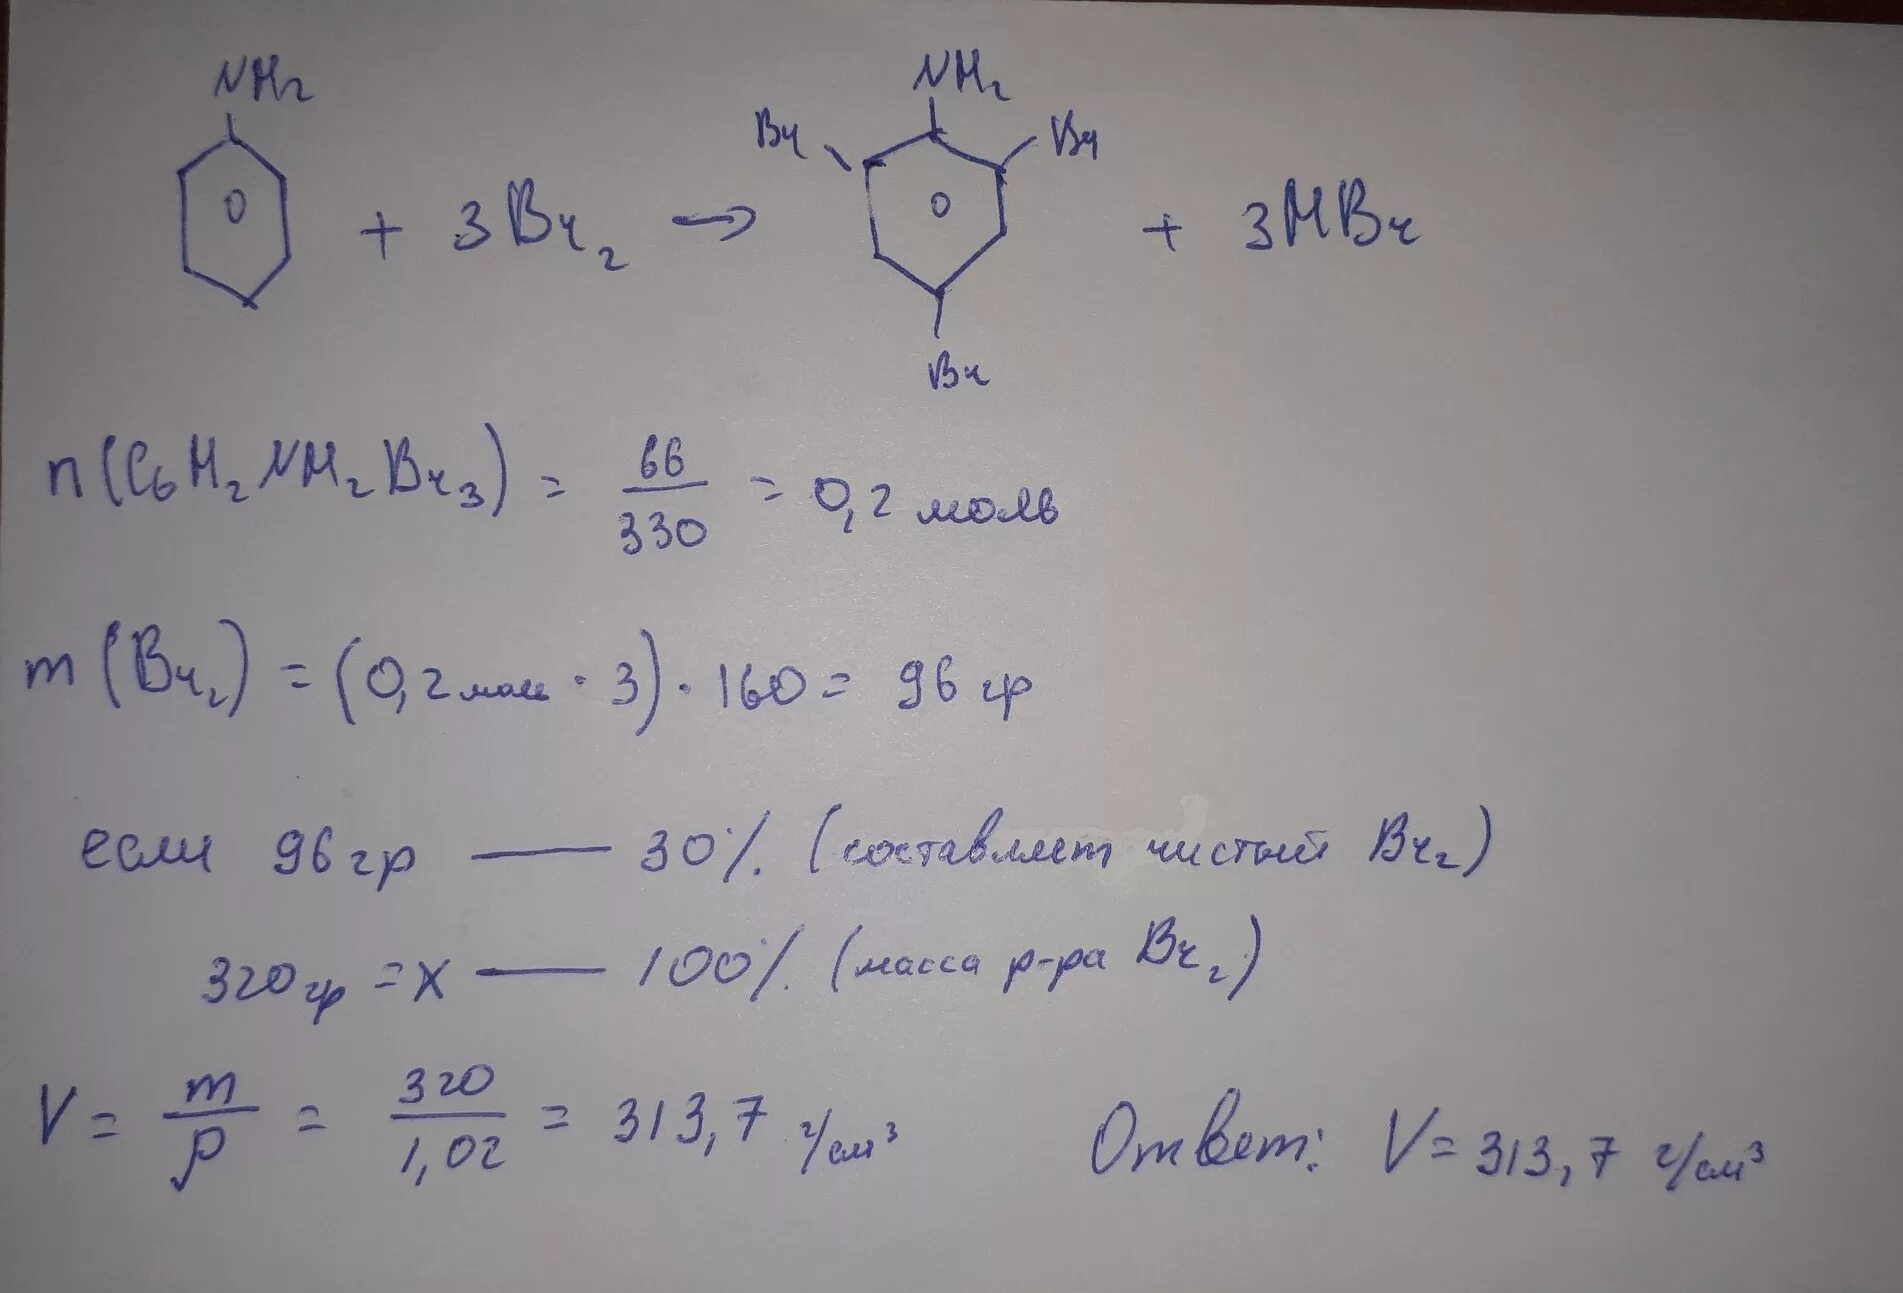 2 4 6 Триброманилин hbr. 2,4,6-Триброманилин+NAOH. 2 4 6 Трибромбензол. 2 4 6 Триброманилин формула. Вычислите массу бромной воды